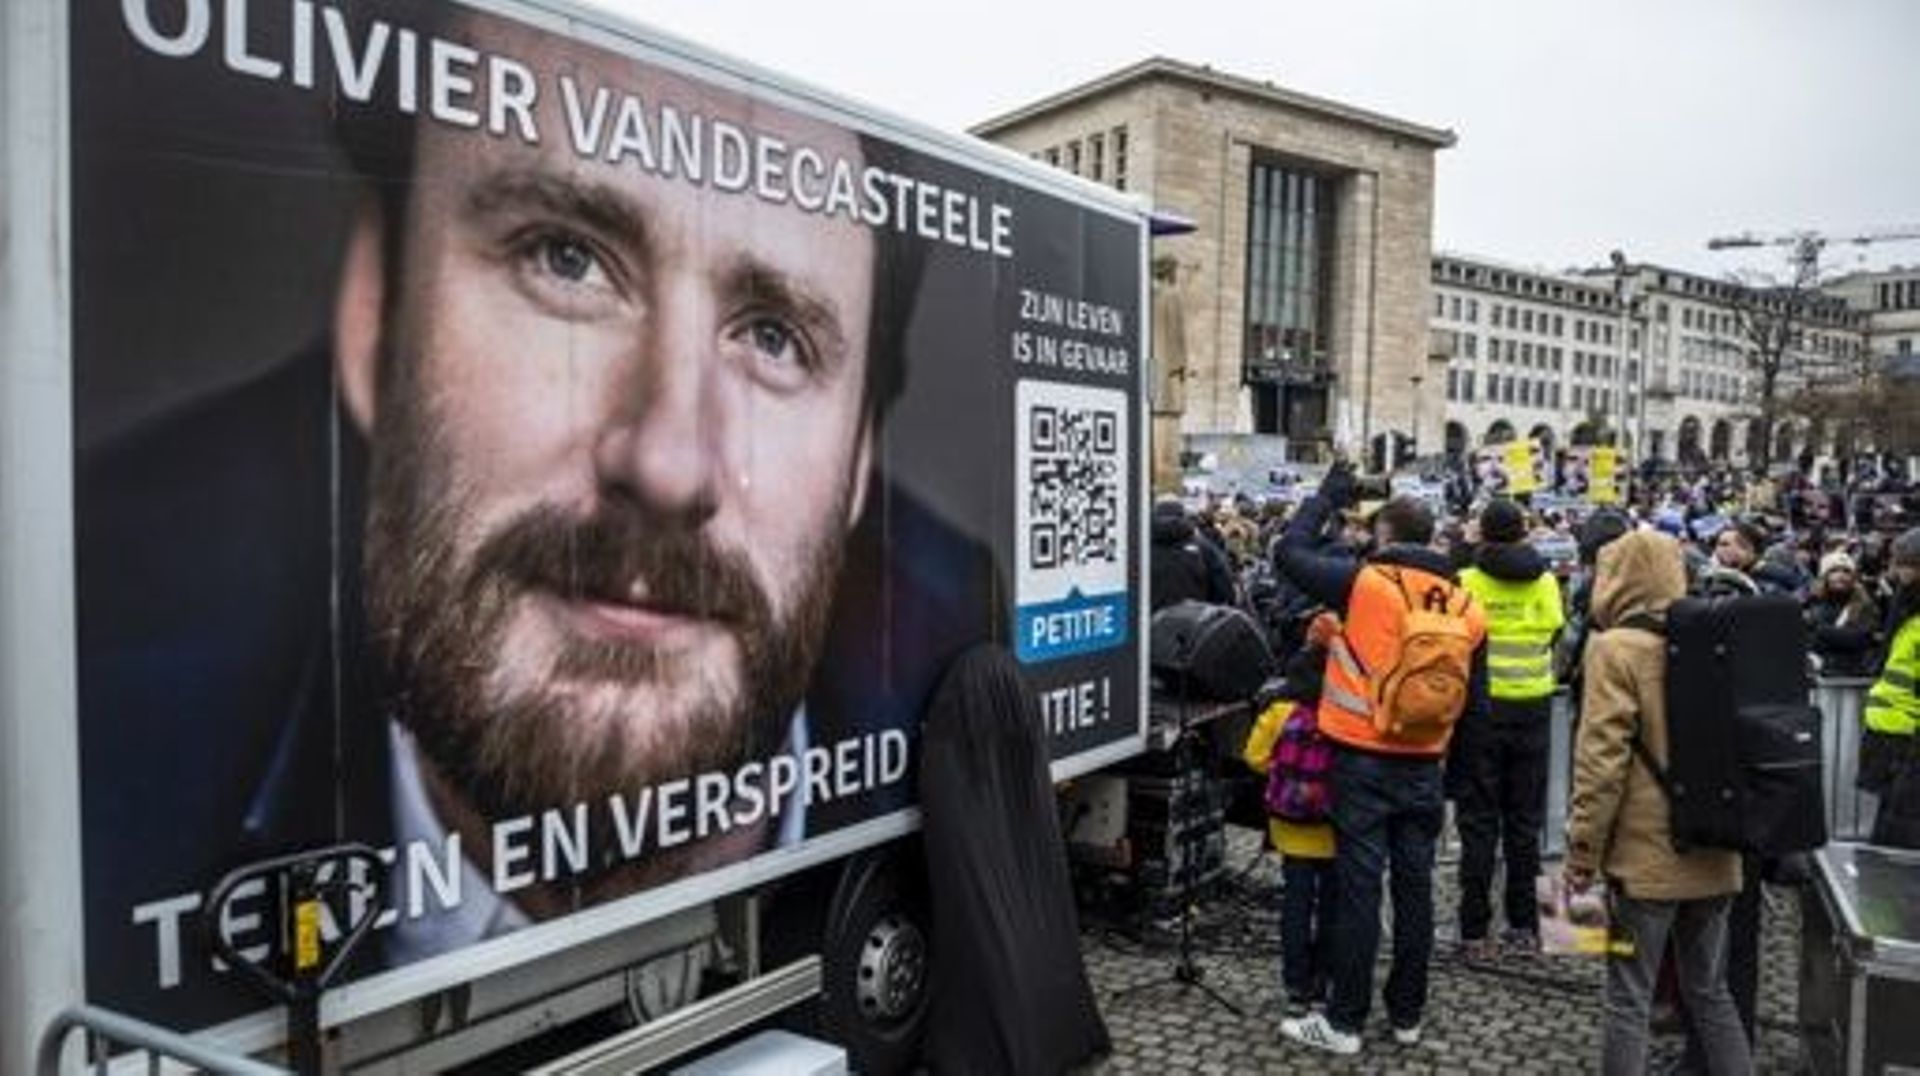 La ville de Bruxelles appelle à la libération immédiate d’Olivier Vandecasteele